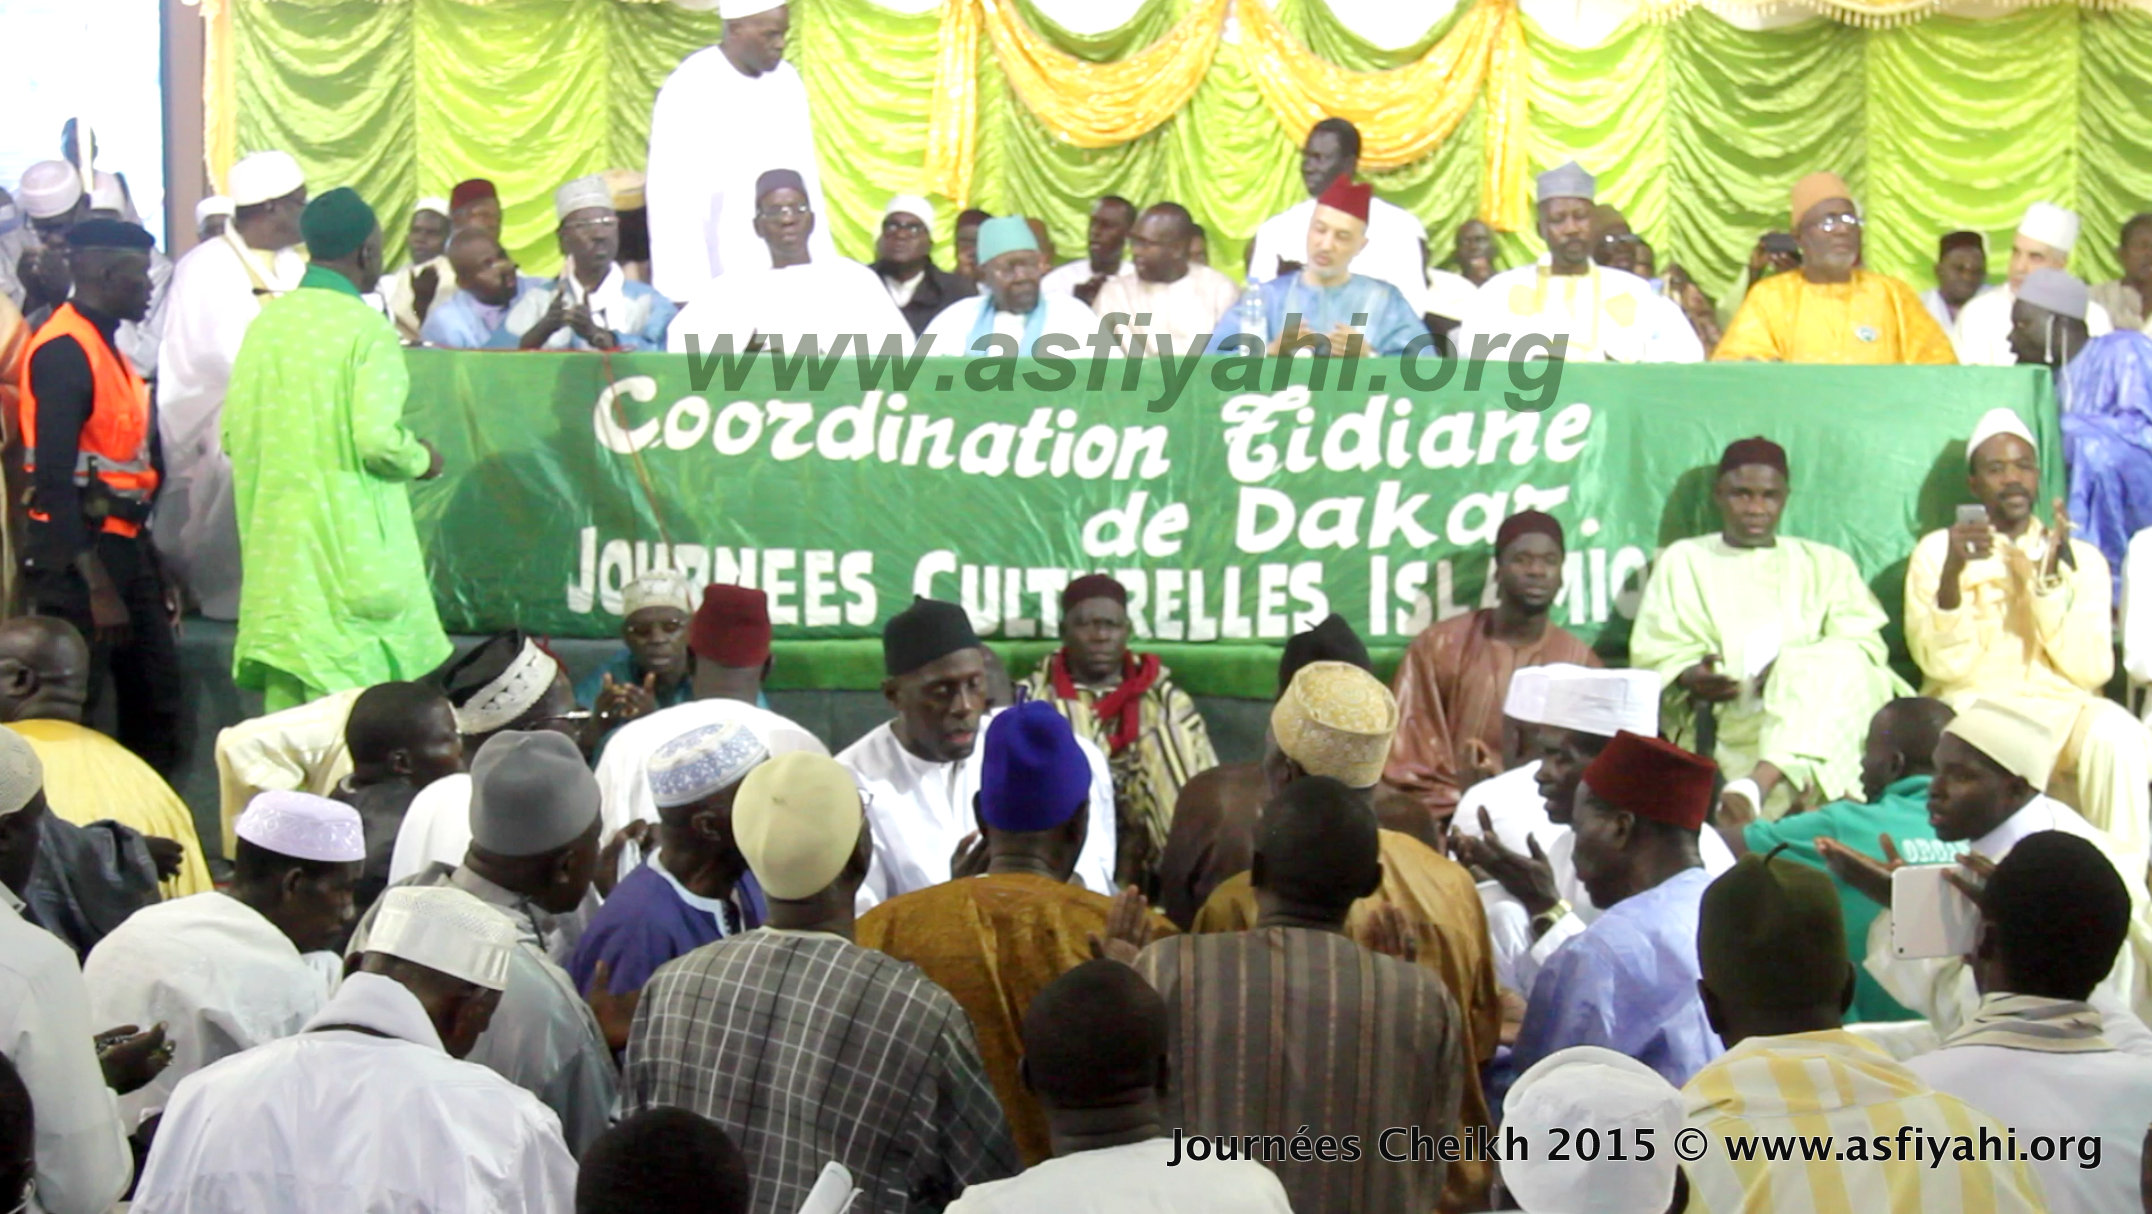 PHOTOS - Les Images de la seconde journée des Journées Cheikh 2015 ( Marche des jeunes Tidianes et Conférence de clôture) 